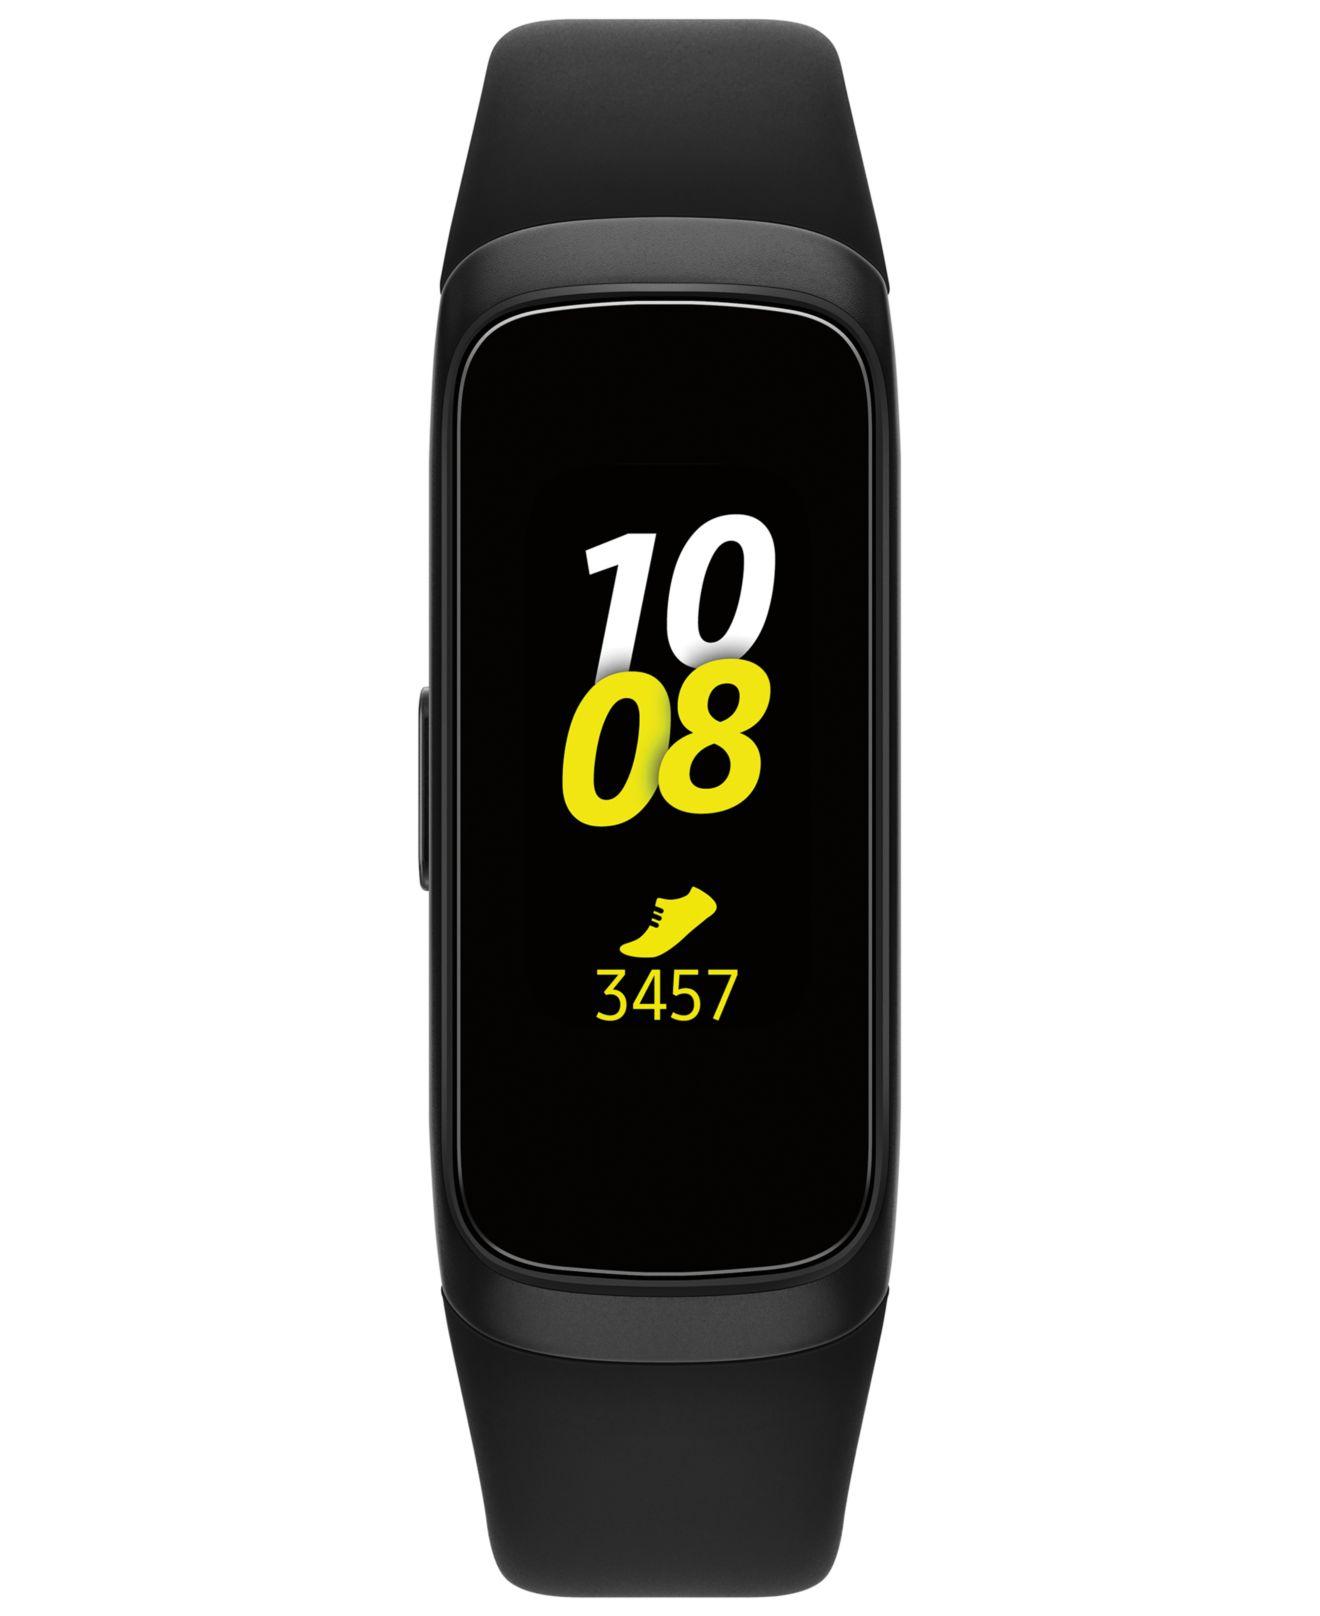 Samsung Unisex Galaxy Fit Black Elastomer Strap Touchscreen Smart Watch